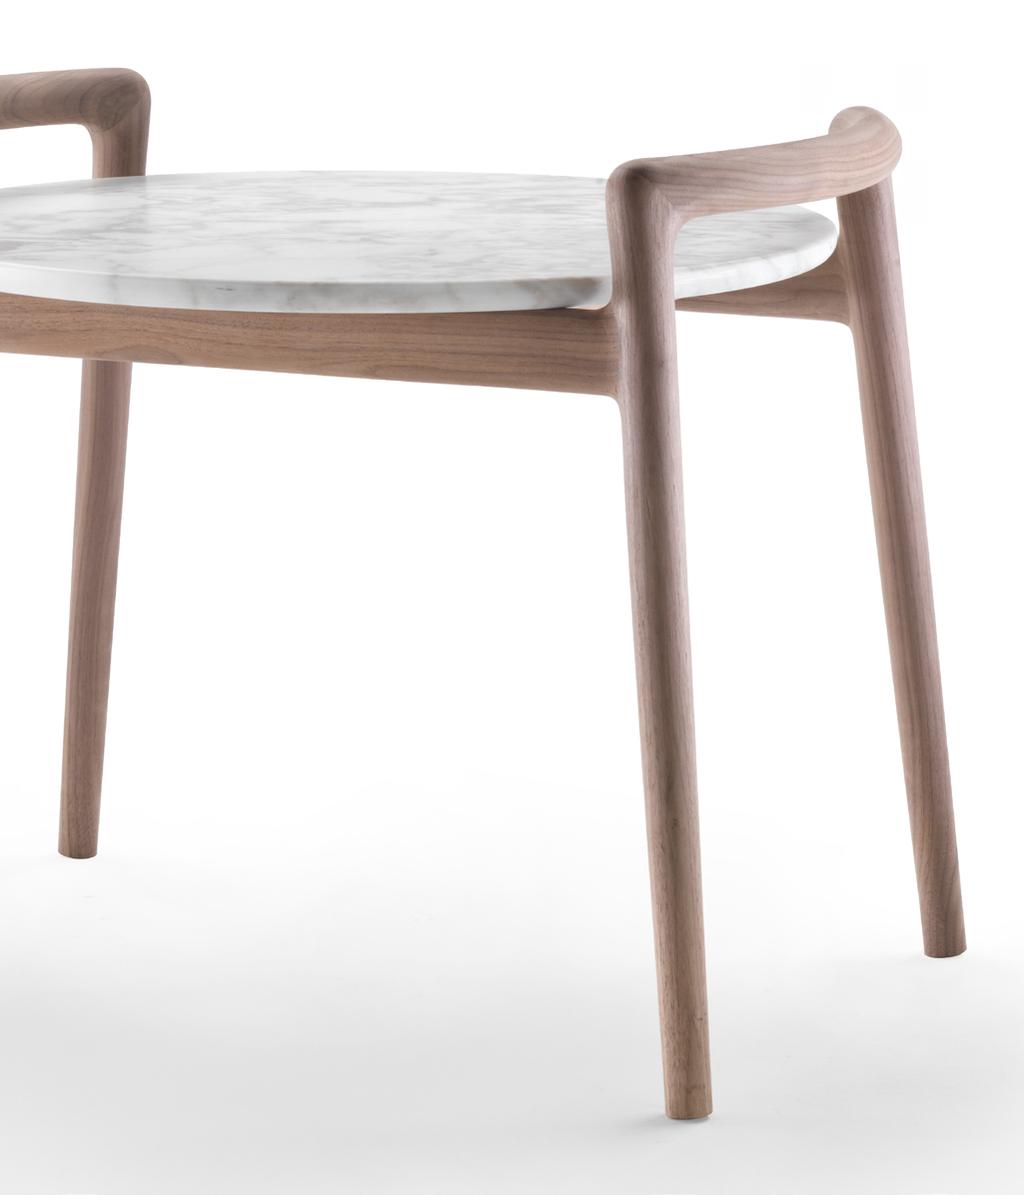 Ascanio Antonio Citterio Design Tavolini Coffee and Side Tables Ascanio è un tavolino in legno massello che unisce alla praticità di utilizzo l attitudine ad inserirsi con misurata eleganza in